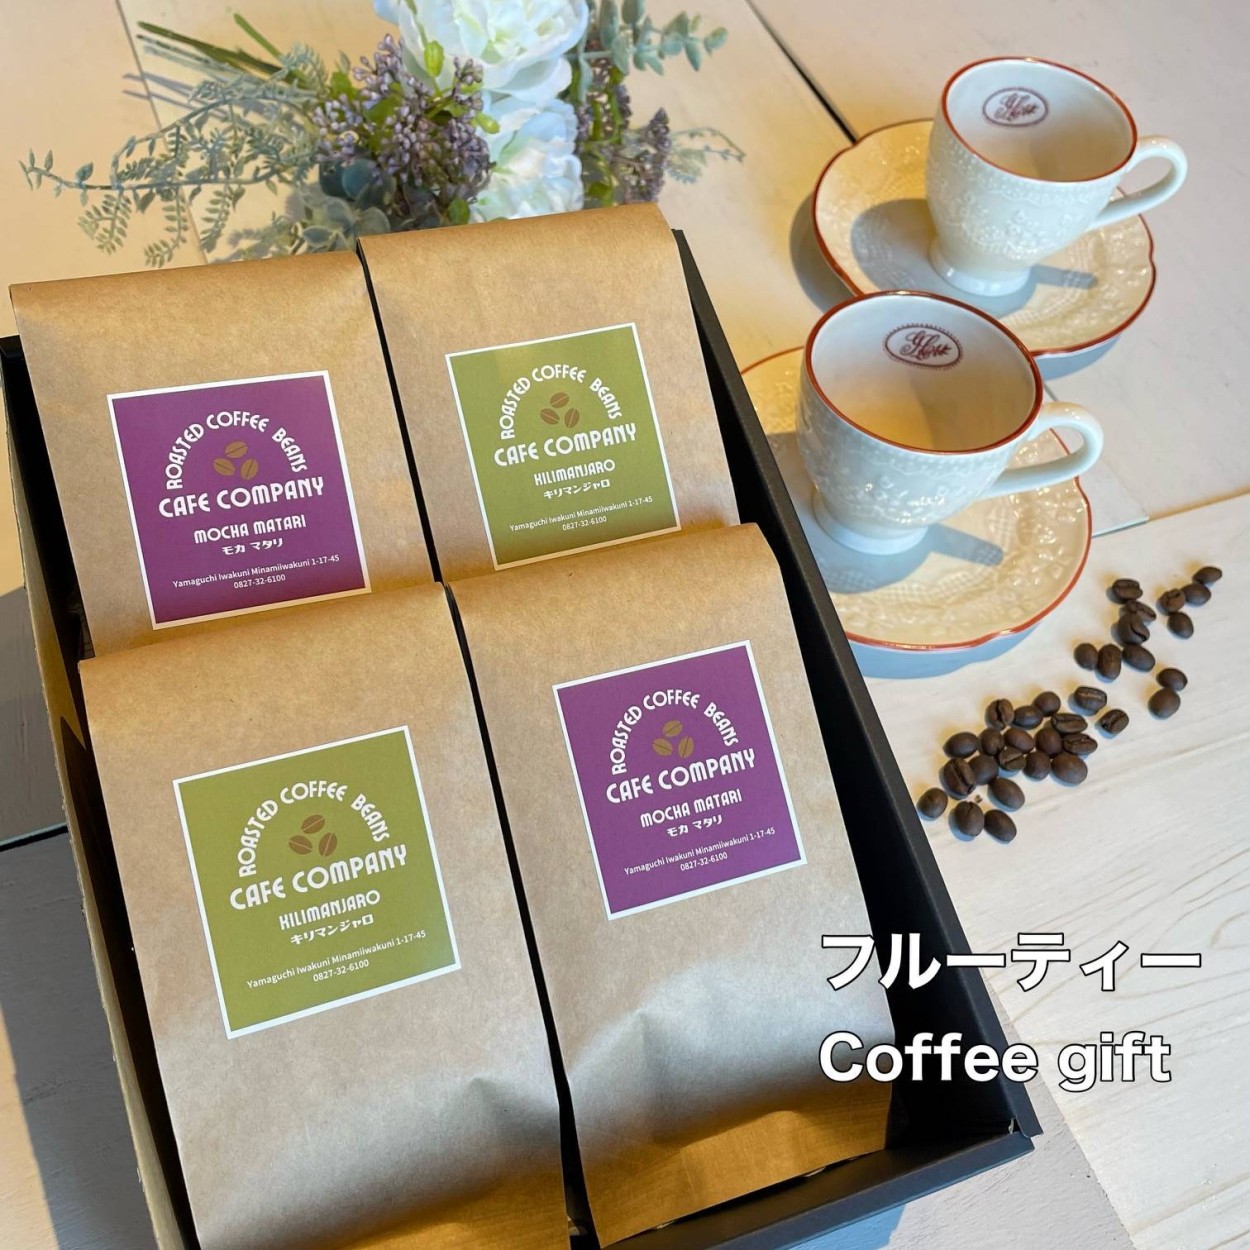 毎日がバーゲンセール 父の日 コーヒー豆 ギフト 4種類の スペシャリティ コーヒー詰め合わせ キリマンジャロ モカマタリ マンデリン パプアニューギニア 送料無料